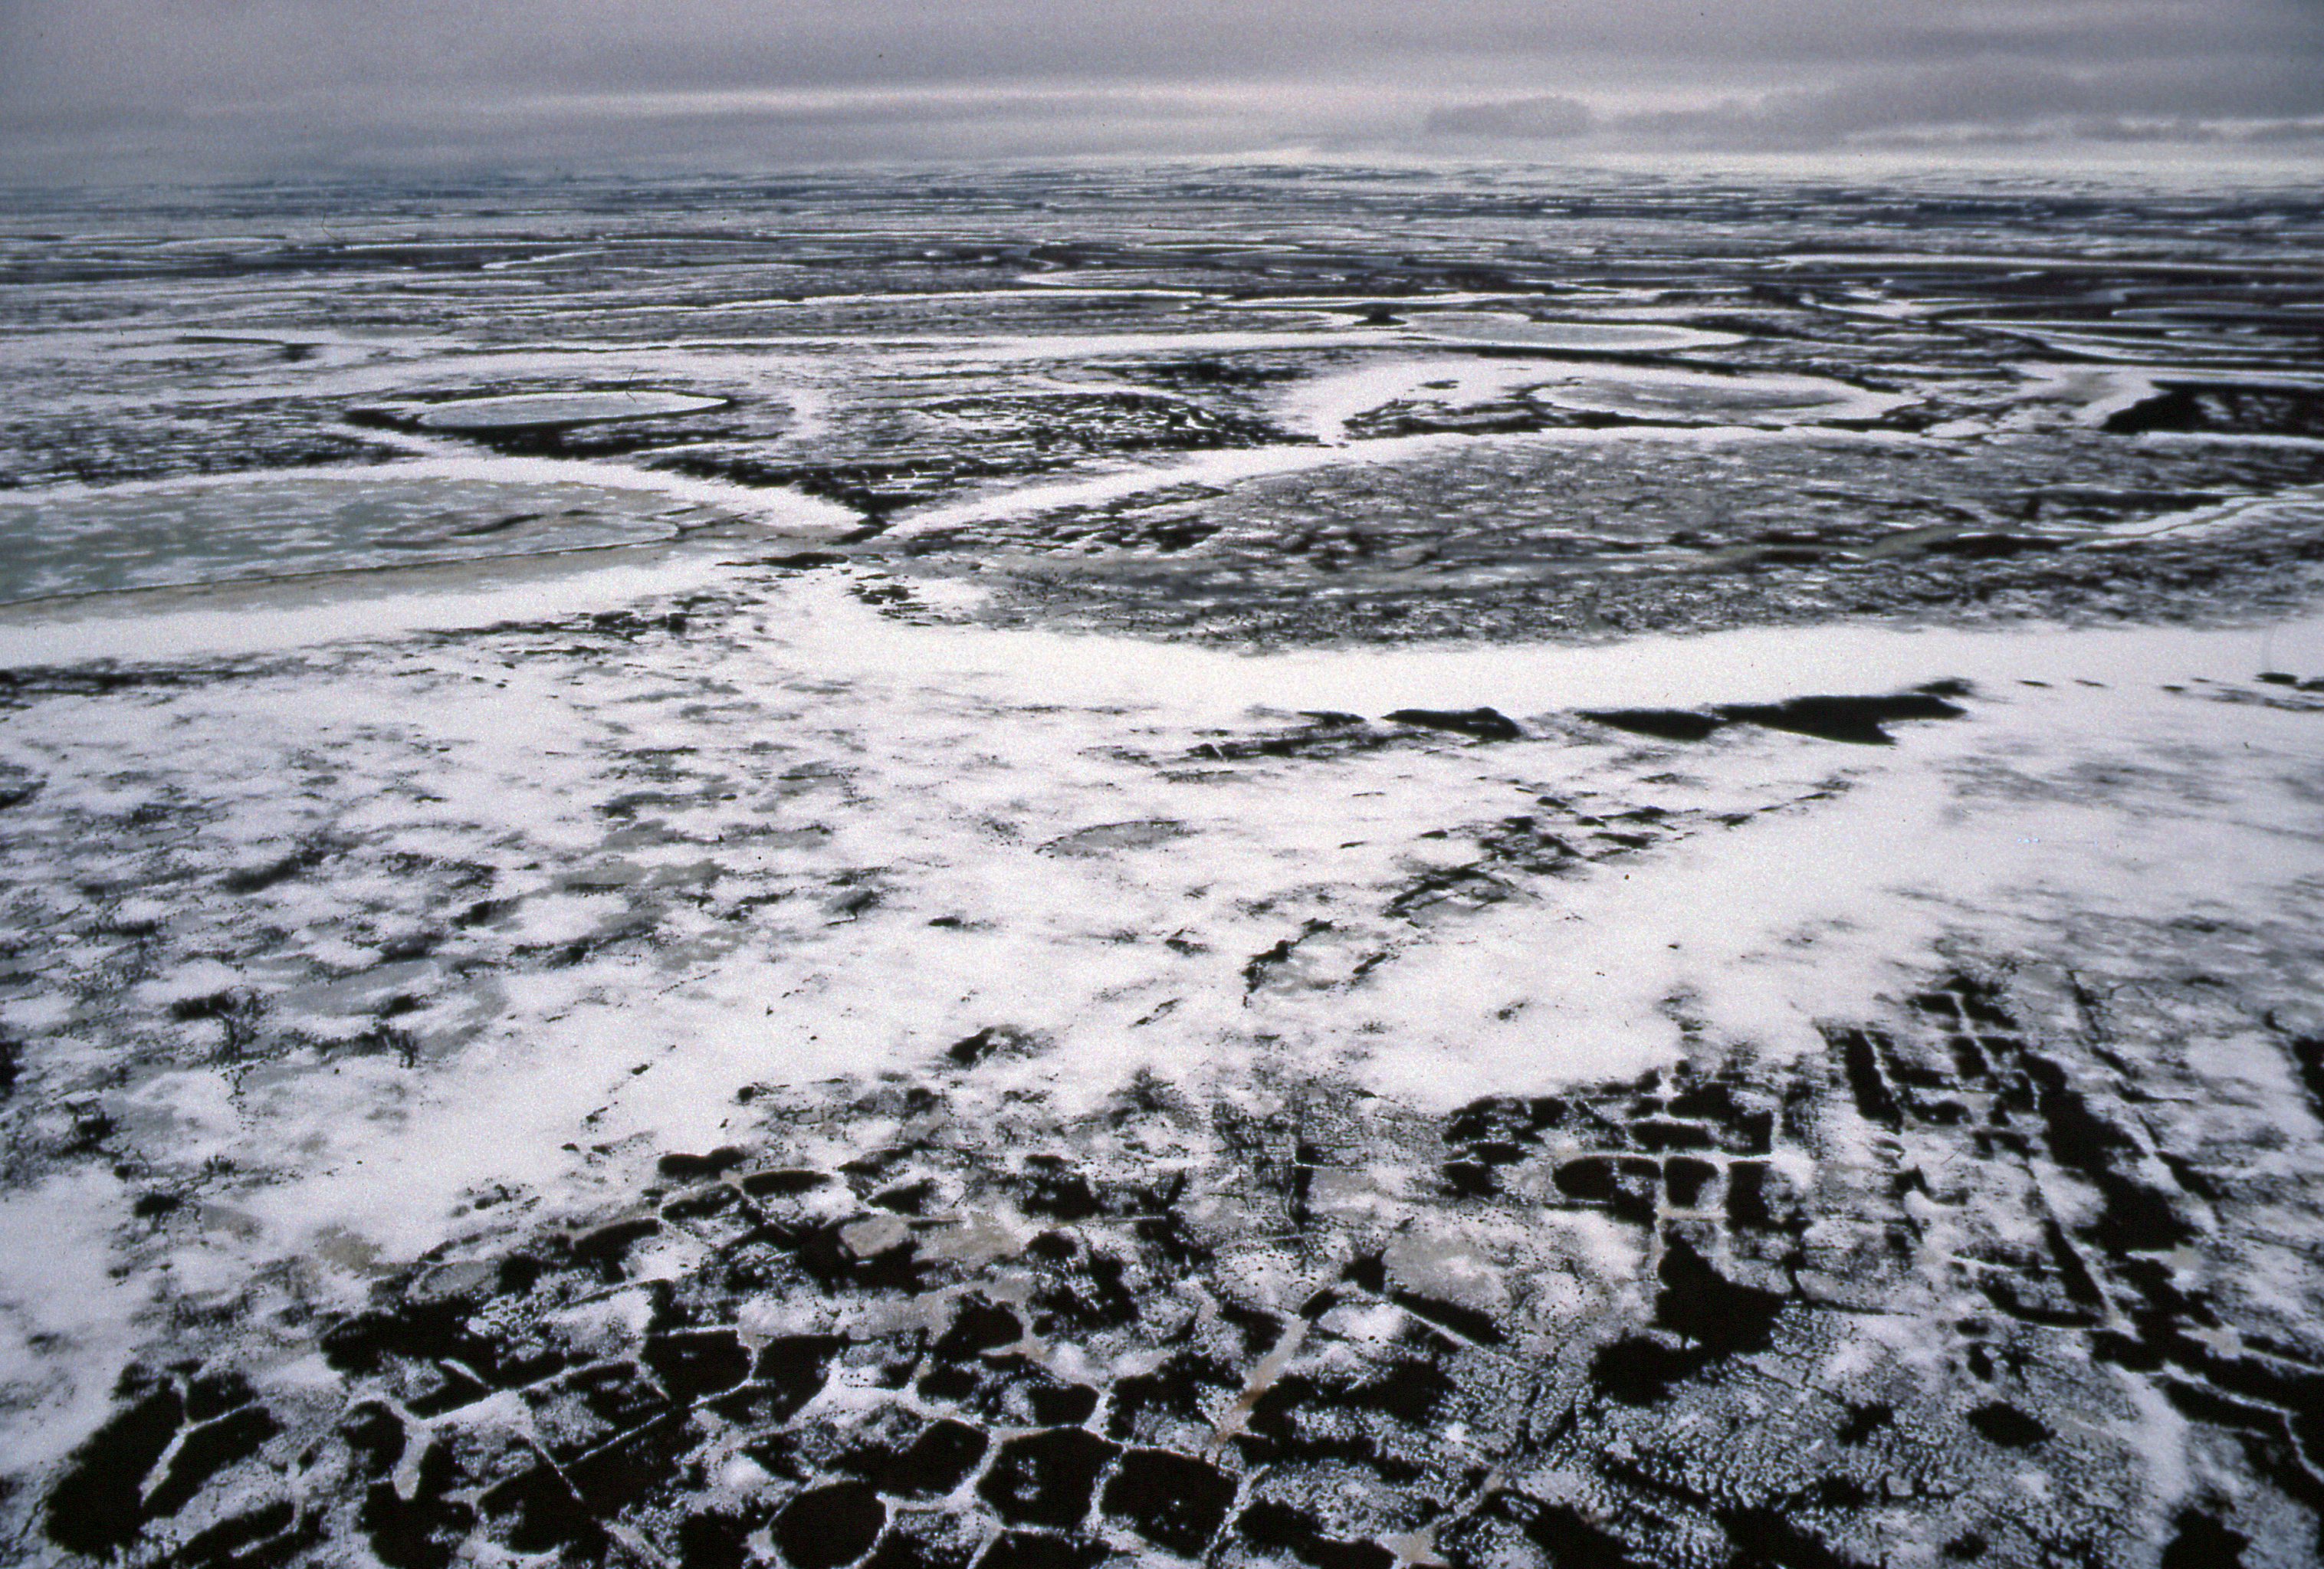 Арктическая тундра осадки